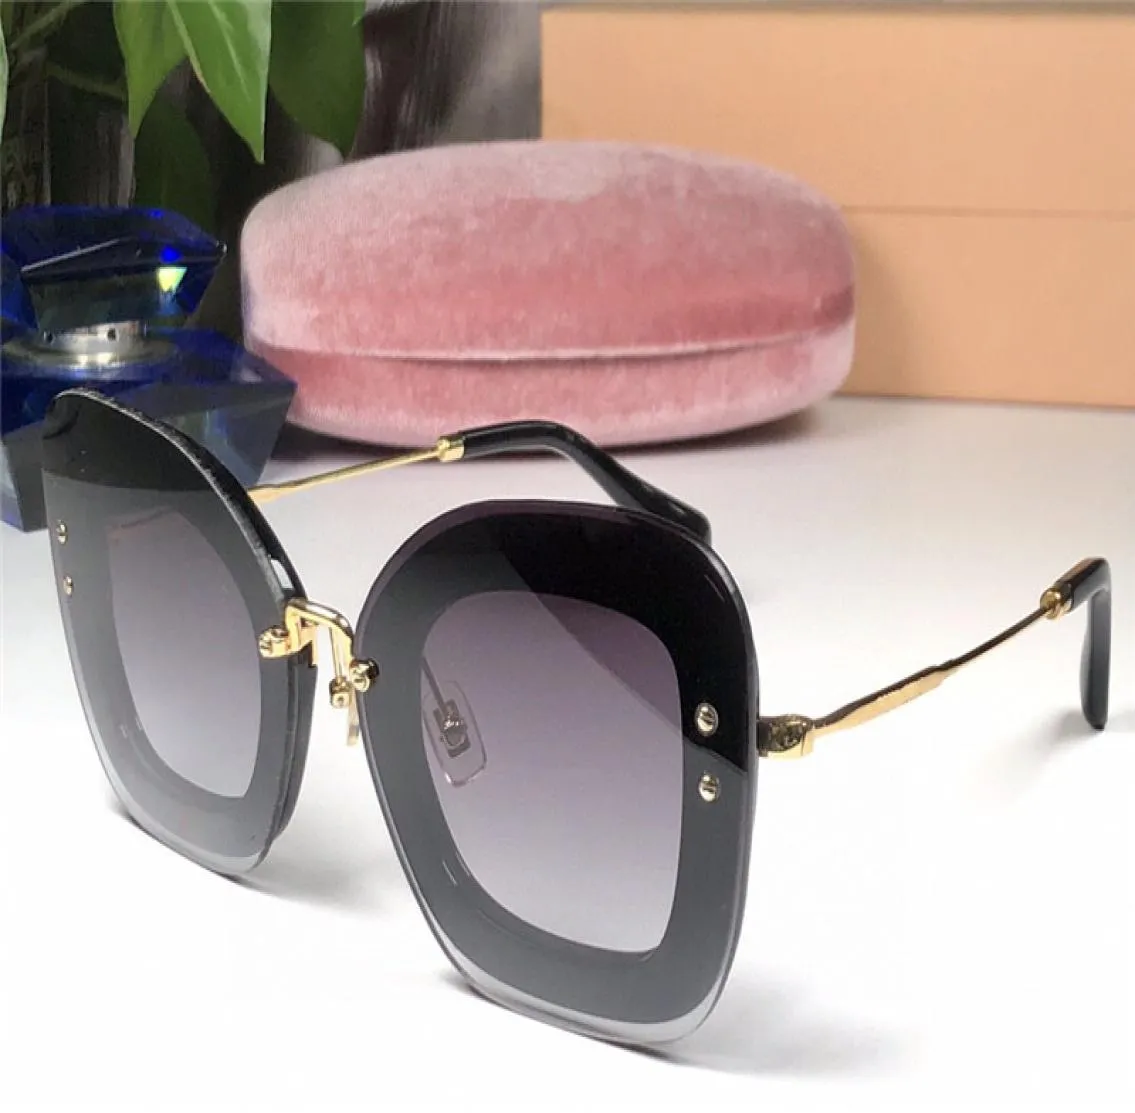 02 Sonnenbrillen Frauen entwerfen beliebte Sonnenbrillen Katzenaugen Rahmen Sonnenbrillen Kristall Metarial Mode Frauen Stil UV400 KOMMEN MIT Pink 8100345